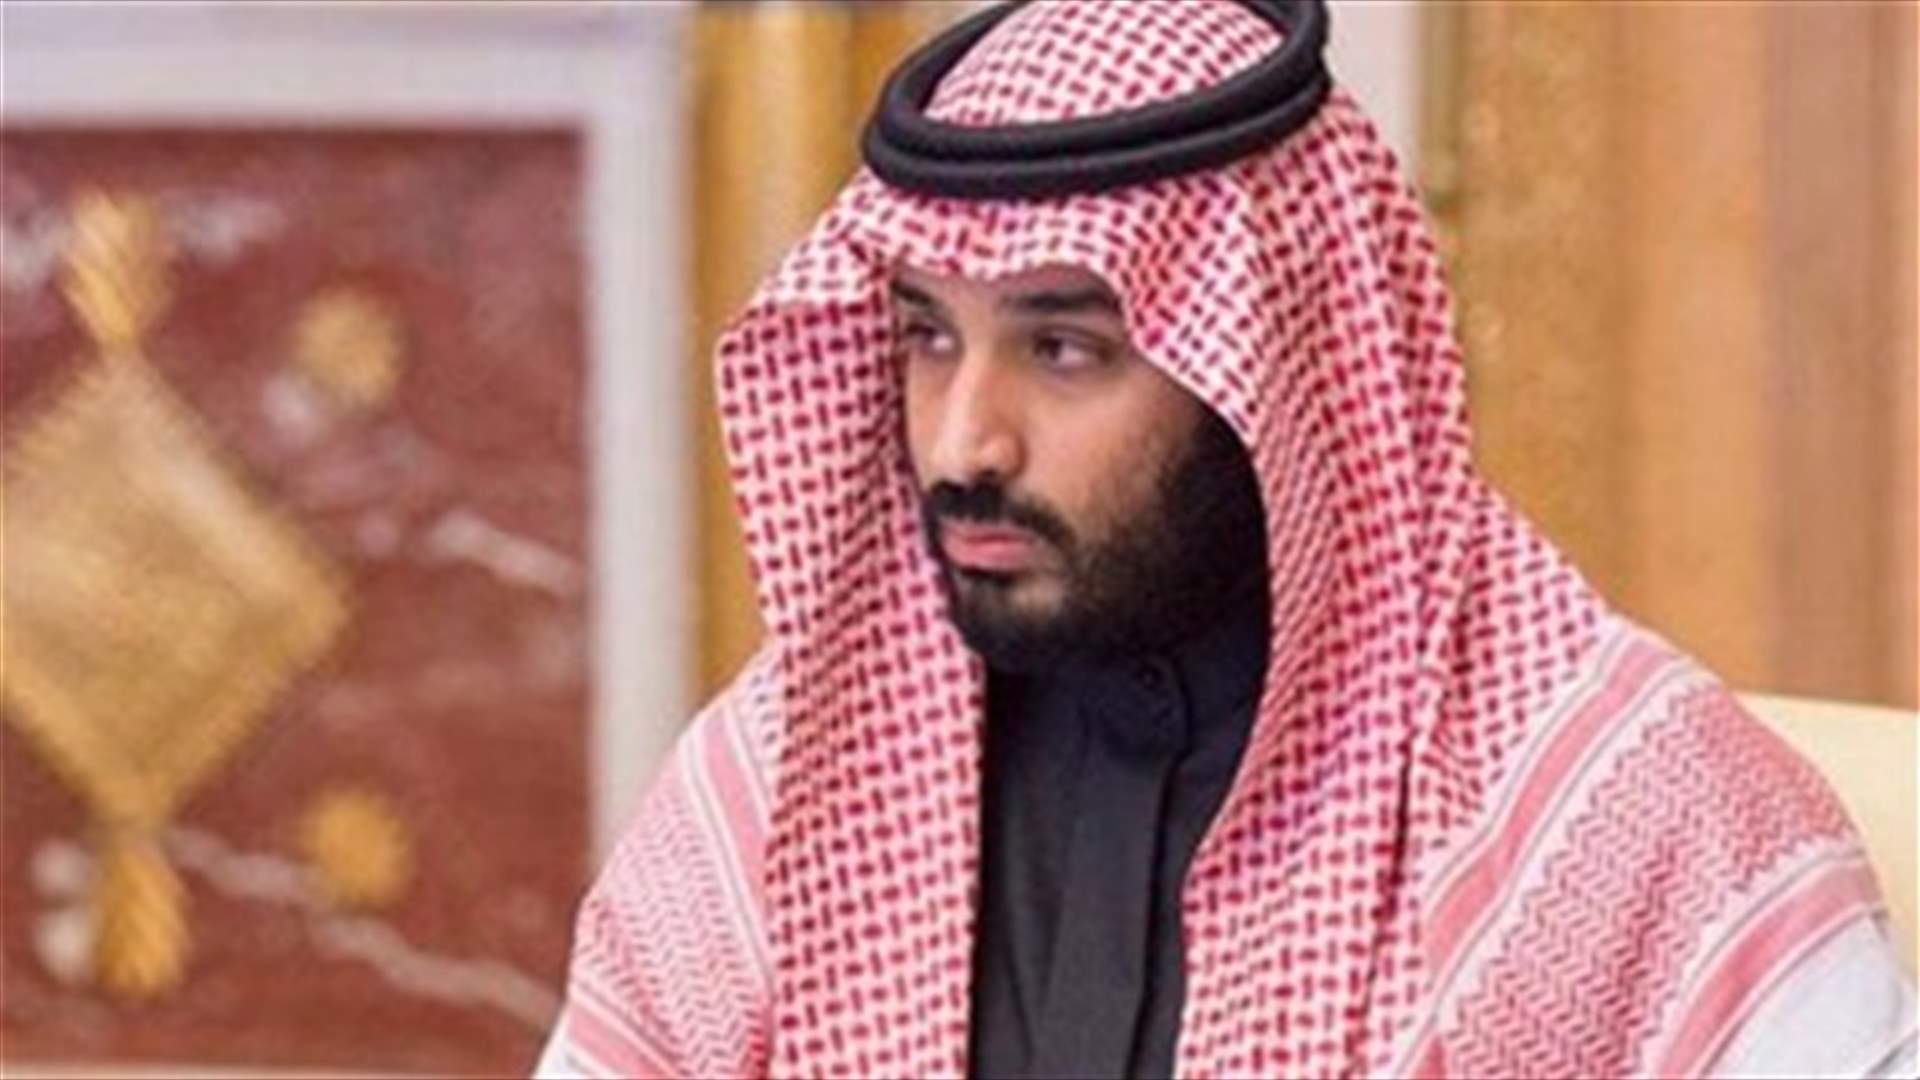 Saudi deputy crown prince goes to meet Trump - agency